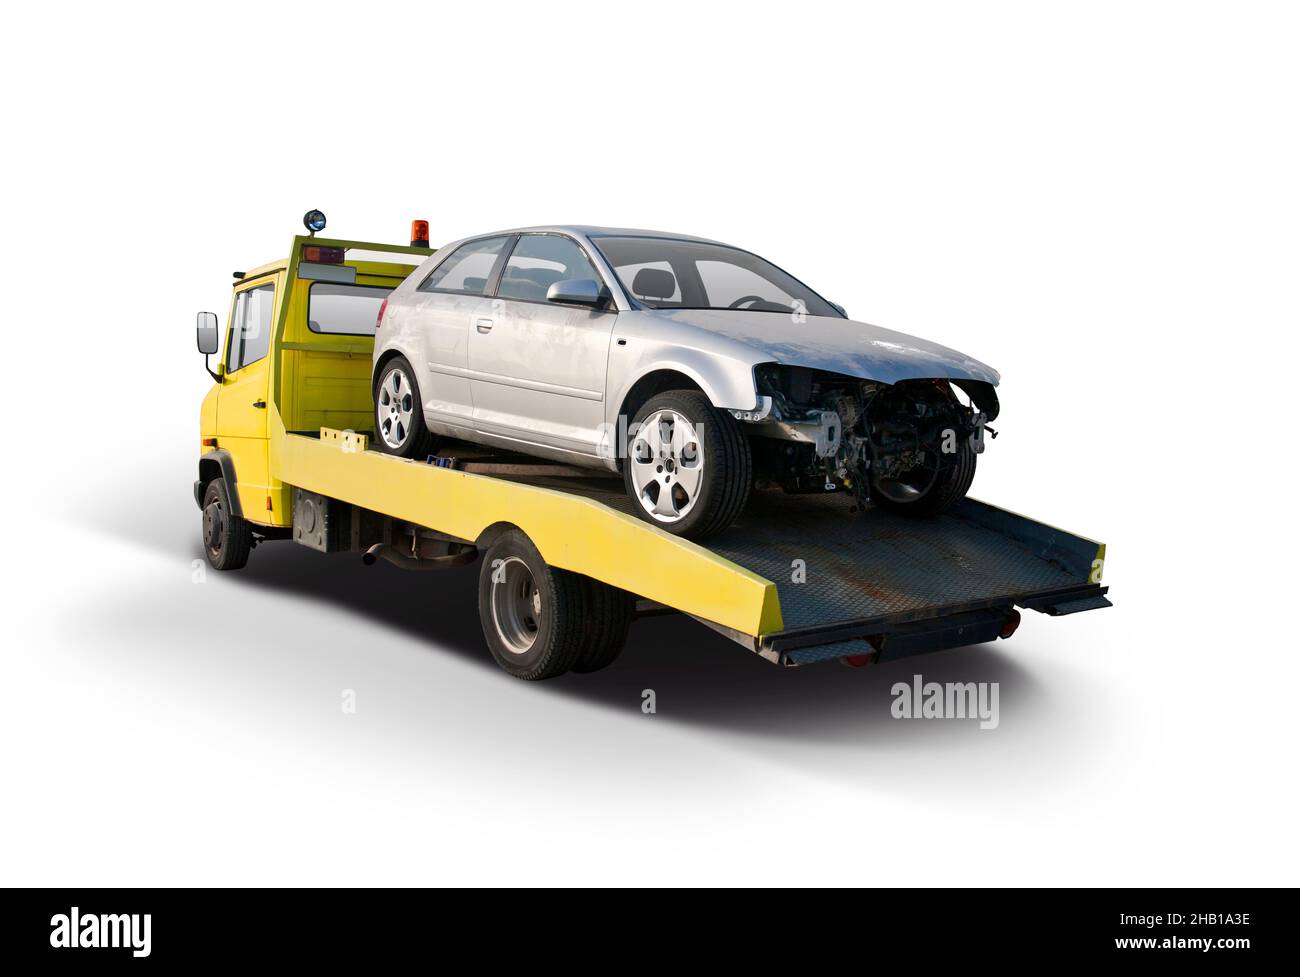 Beschädigtes Auto nach Unfall auf Abschleppwagen isoliert auf weißem Hintergrund Stockfoto